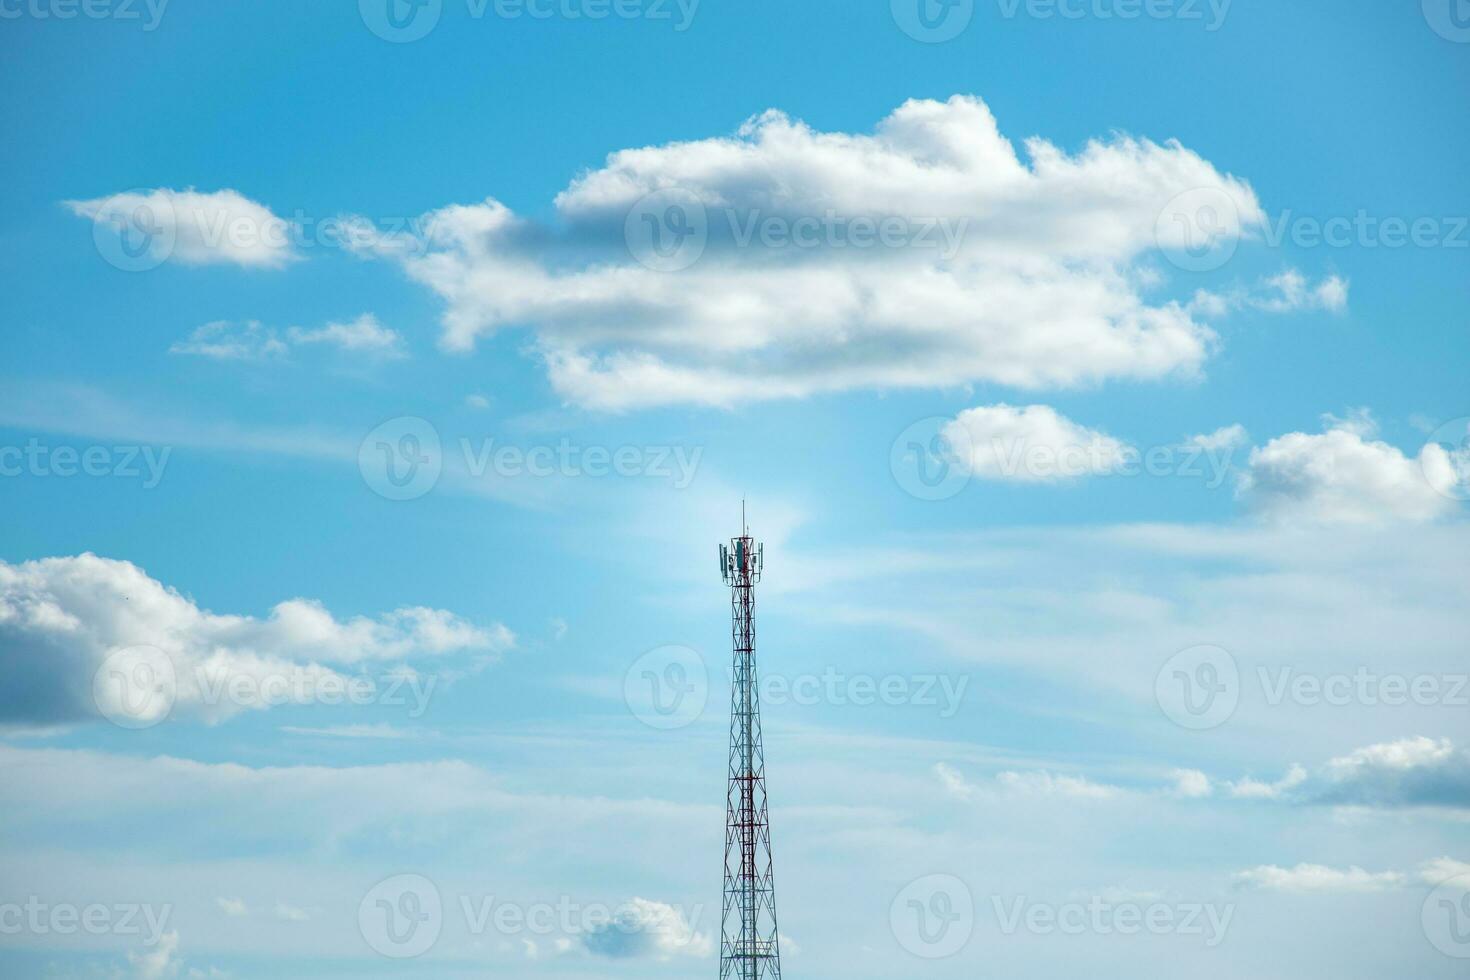 antenna telecomunicazioni e comunicazione su cielo e grande nuvole sfondo, bellissimo pendenza cielo e nuvole con alba, concetto di comunicazione e dati trasmissione, futuro 5g senza fili. foto